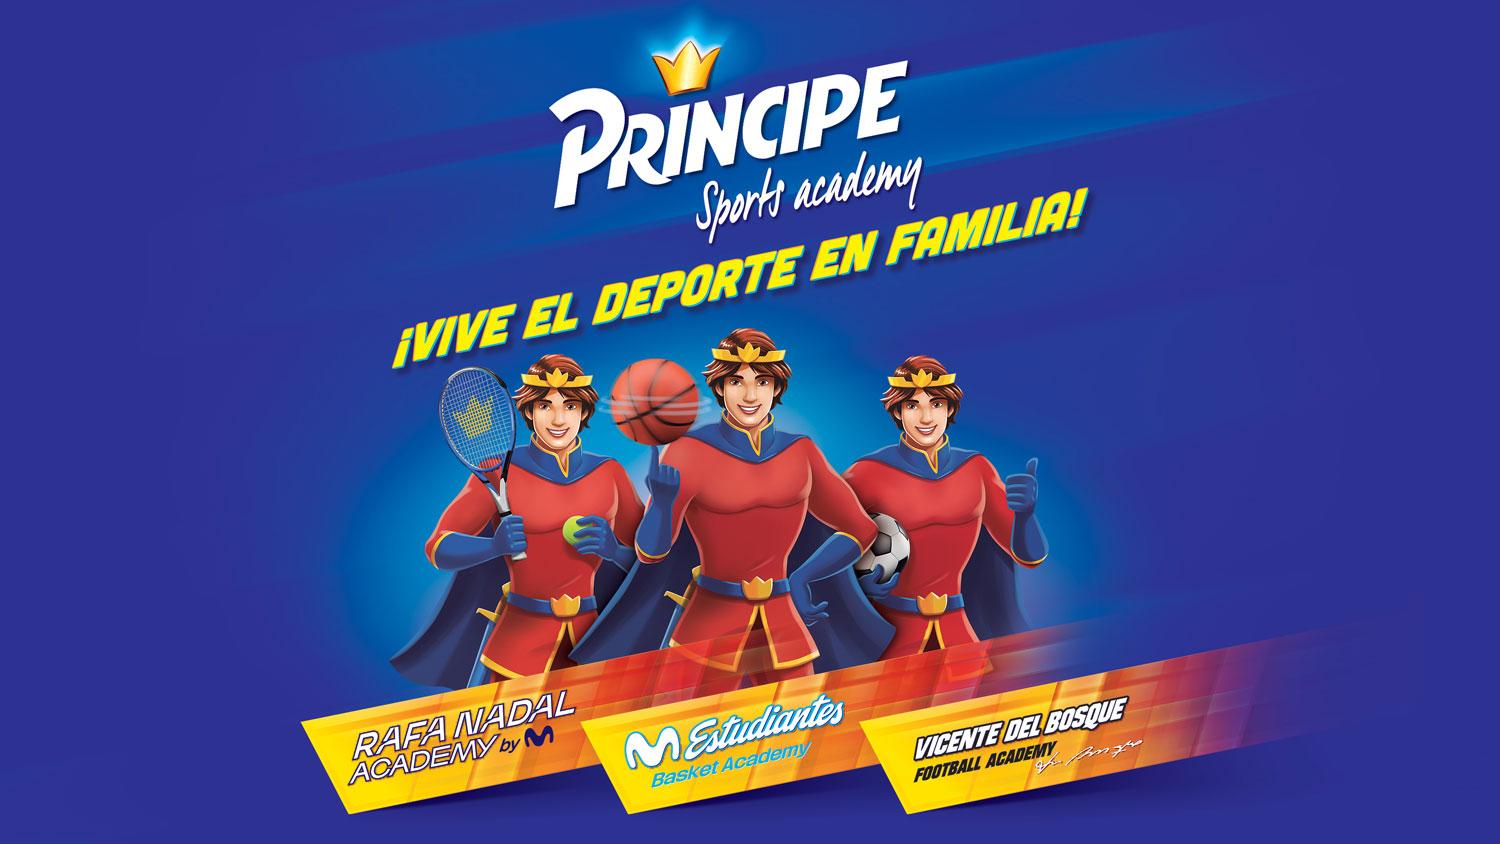 Príncipe crea Príncipe Sports Academy para fomentar un estilo de vida activo con el apoyo de Vicente Del Bosque Football Academy, Rafa Nadal Academy by Movistar y Movistar Estudiantes Academy”